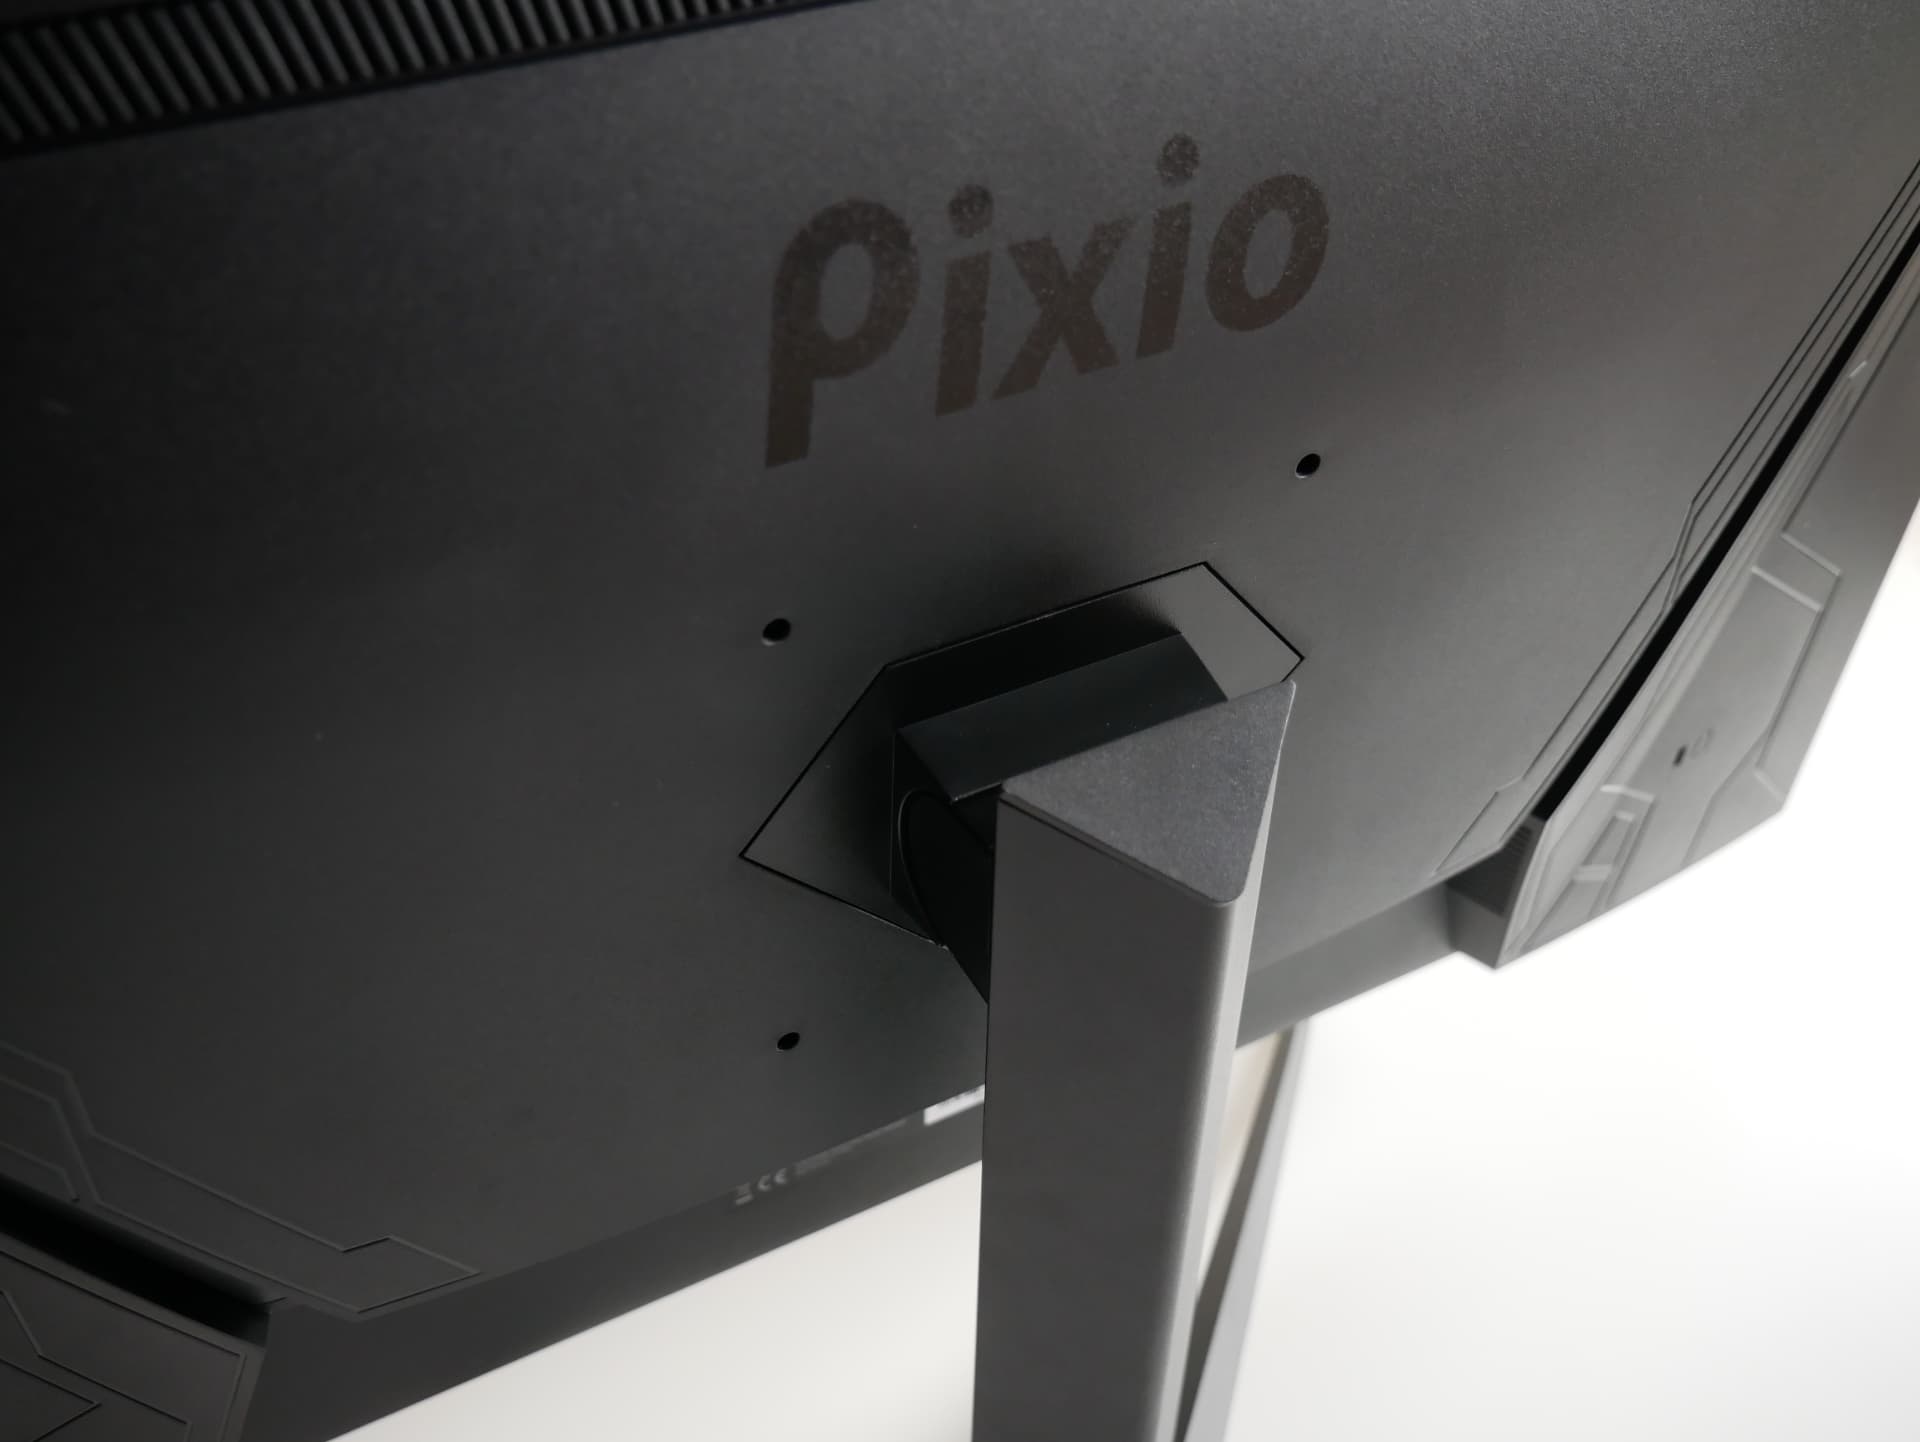 Pixio Px279 Prime レビュー コストパフォーマンスの良さが光る Ipsパネルを搭載した27インチの240hzゲーミングモニター Dpqp